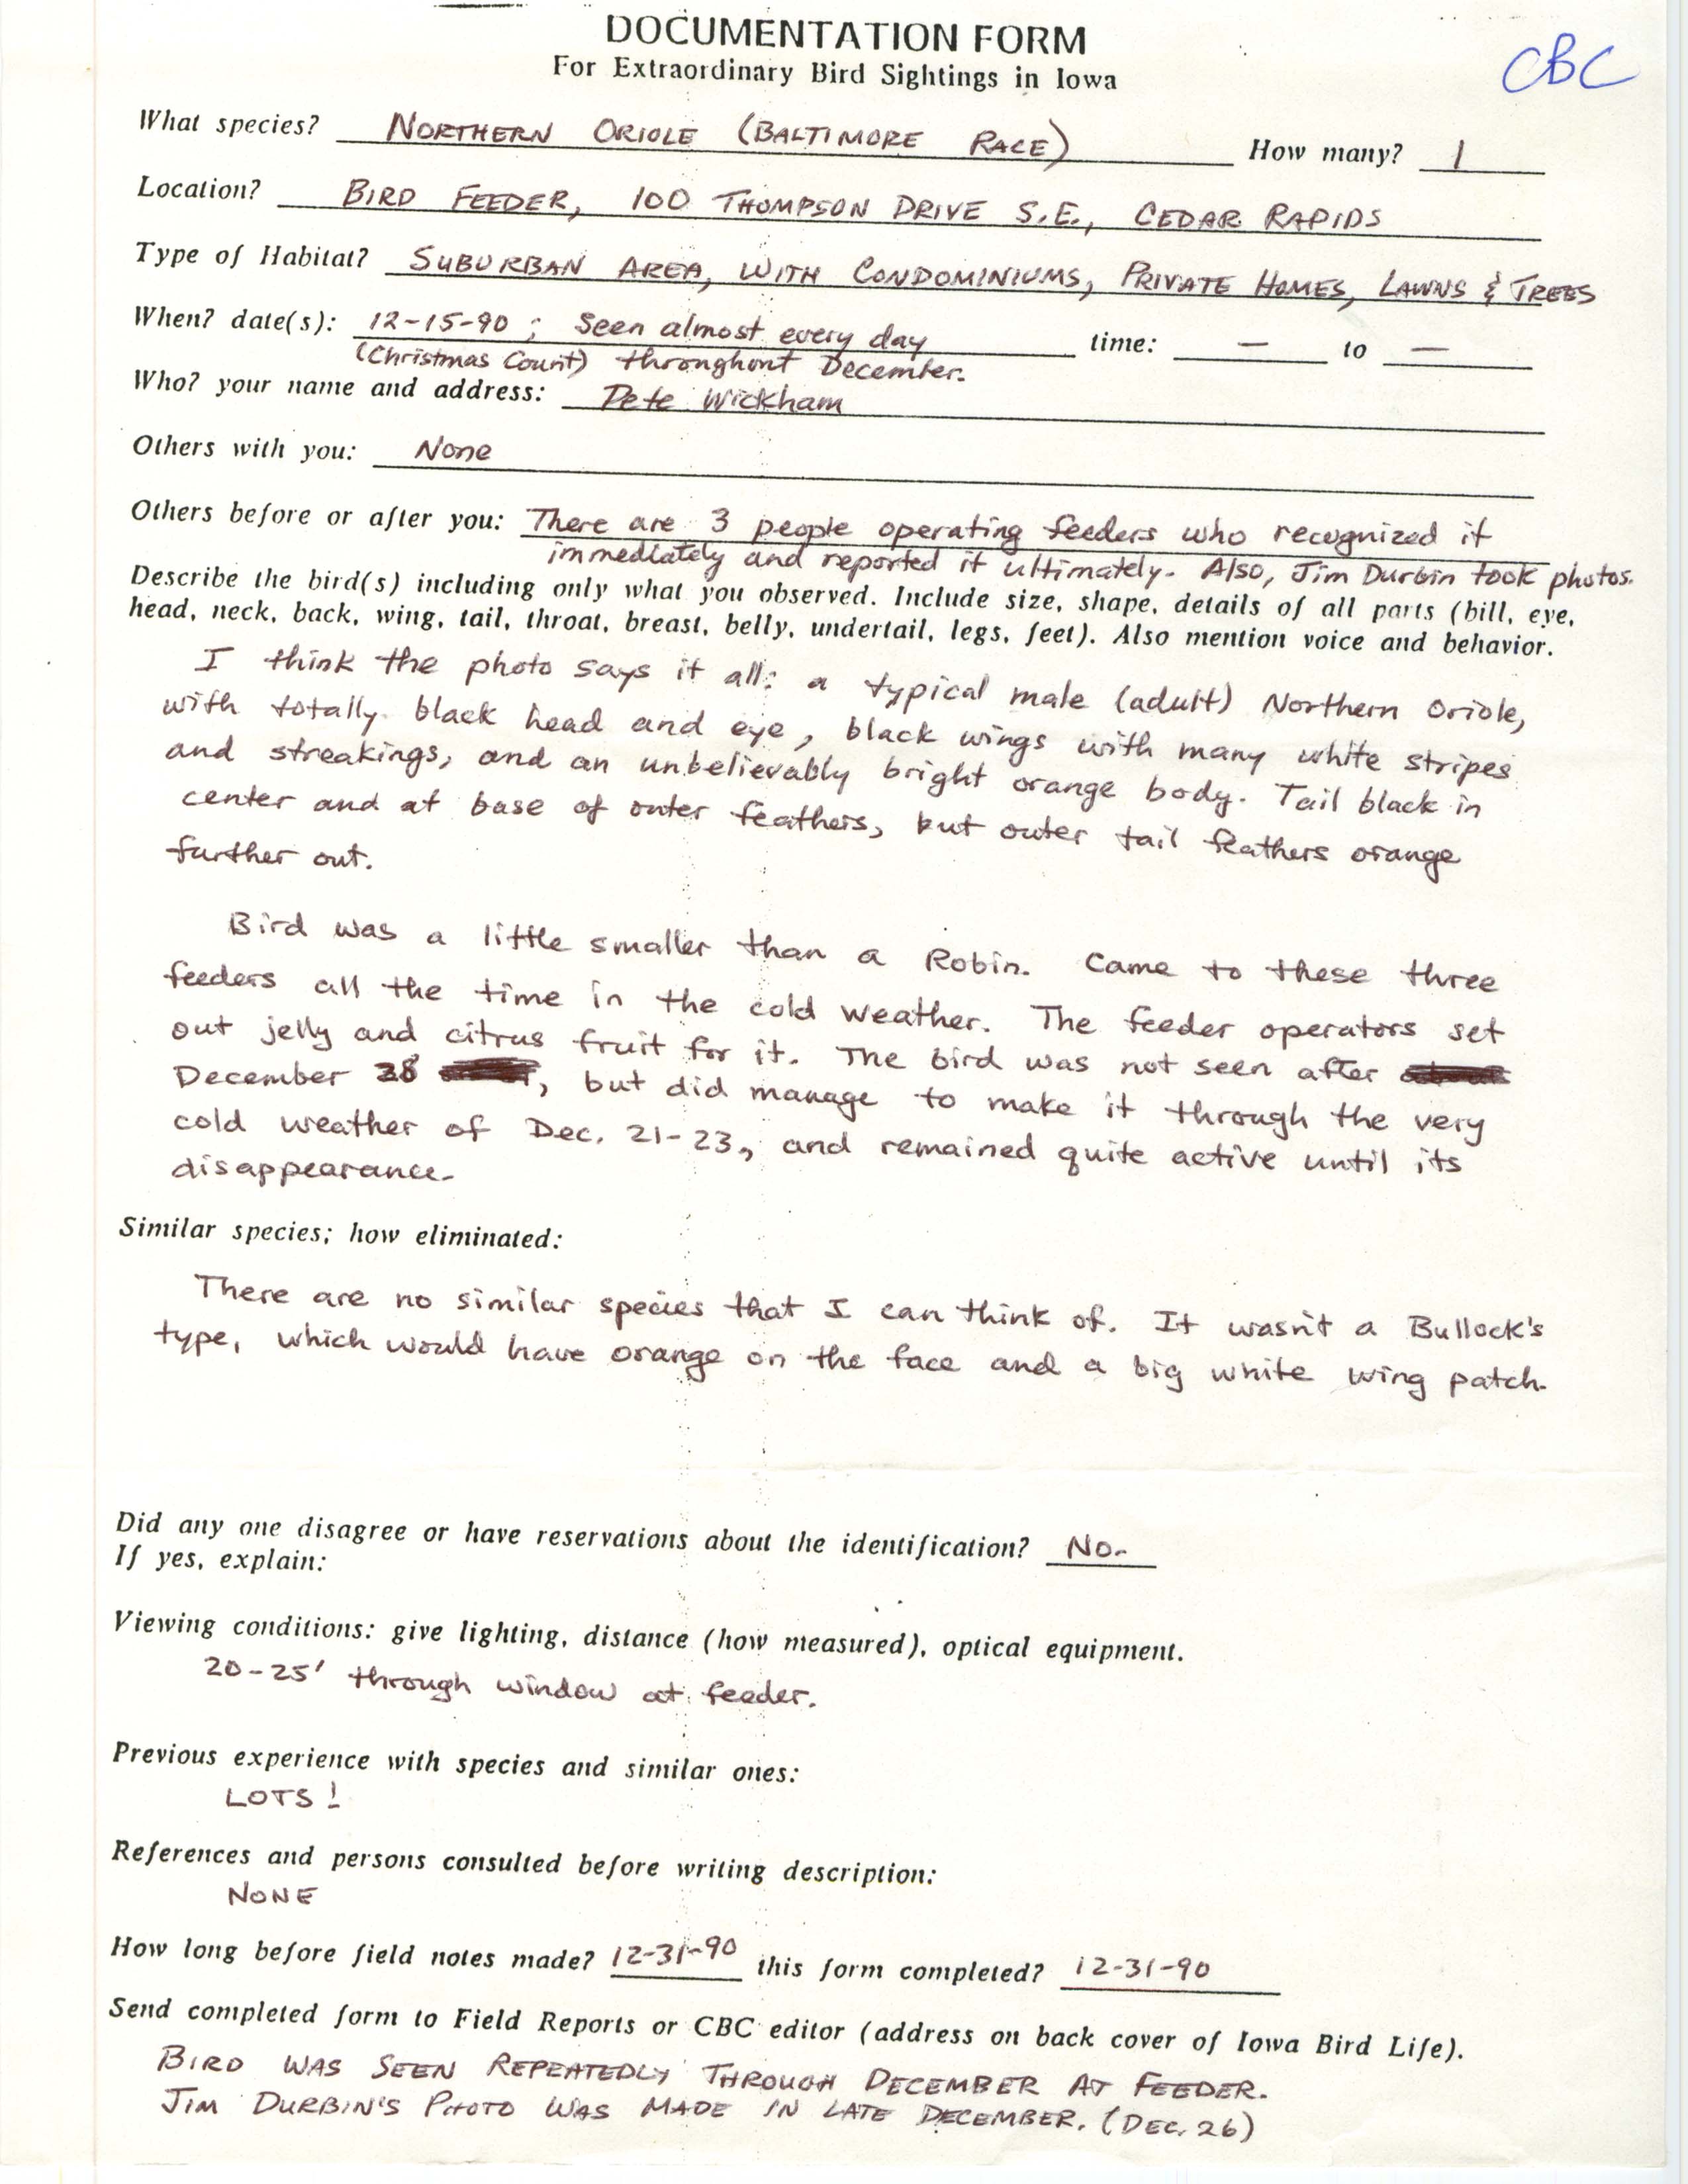 Rare bird documentation form for Baltimore Oriole at Cedar Rapids, 1990